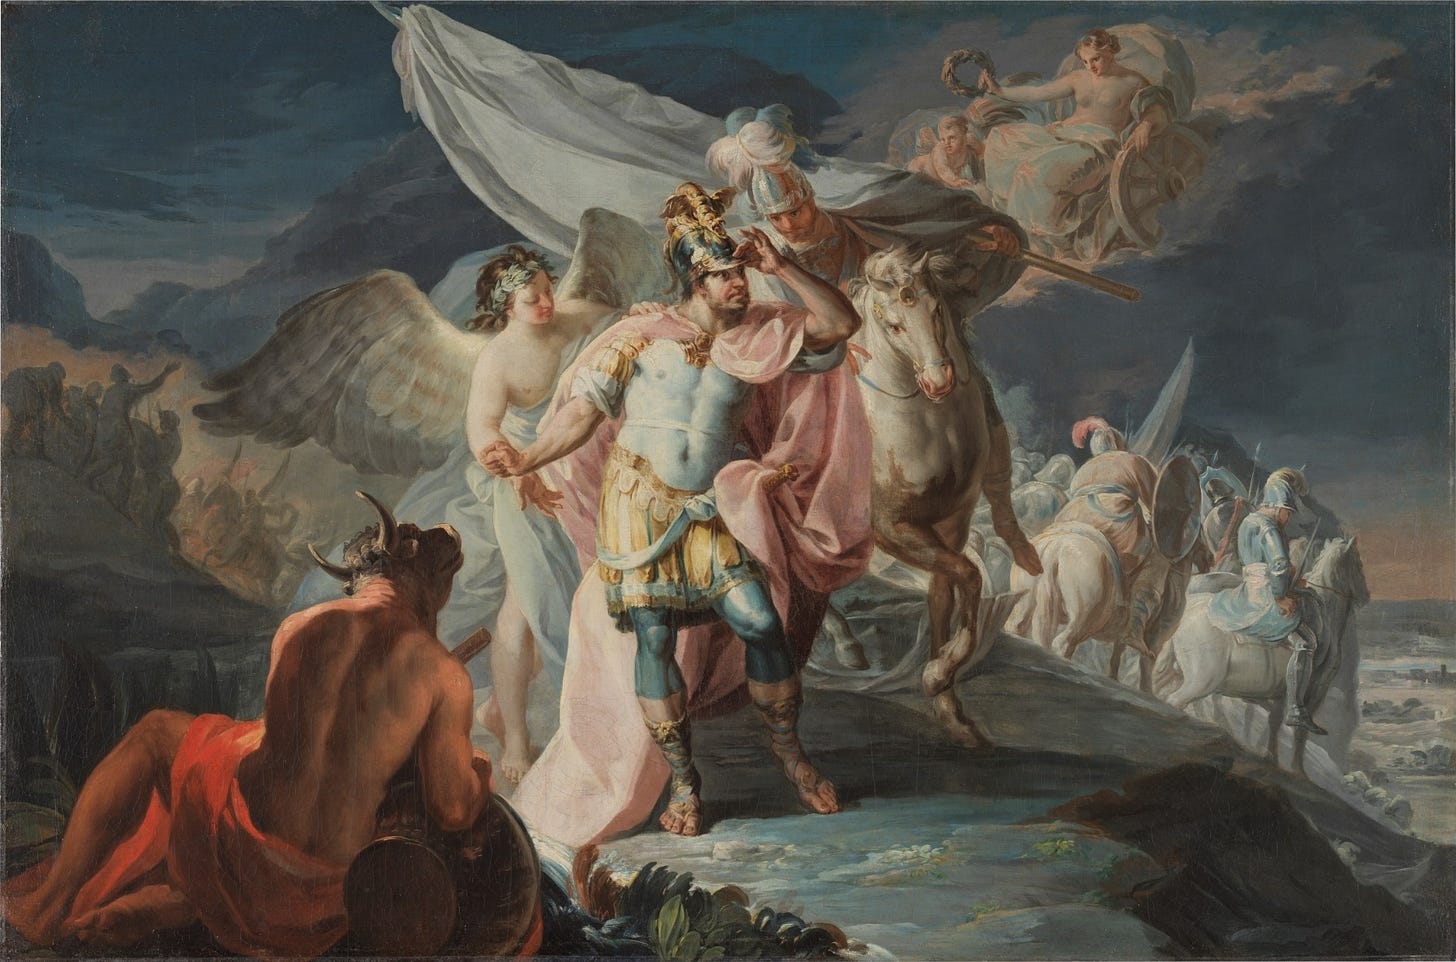 Aníbal vencedor contempla por primera vez Italia desde los Alpes, óleo sobre lienzo, 87 x 131,5 cm. Madrid, Museo del Prado (adquirido por donación de los Amigos del Prado en 2020; previamente perteneció a la Fundación Selgas-Fagalde).